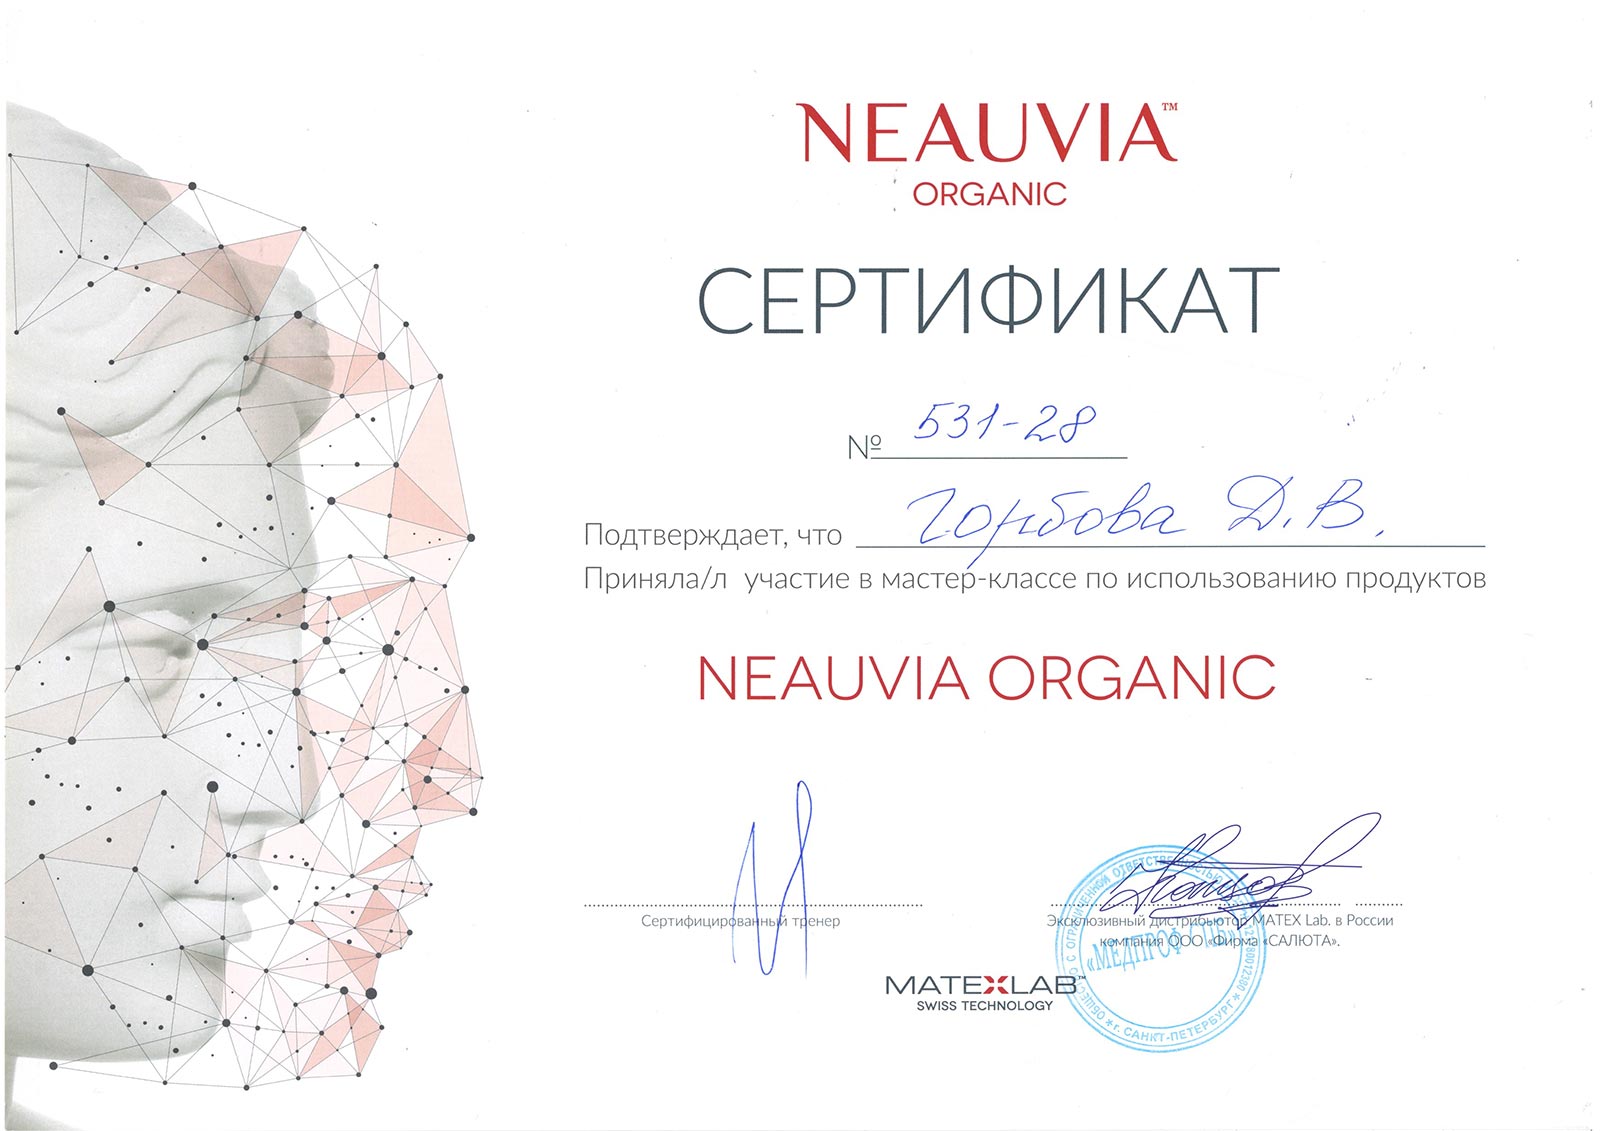 Сертификат — Мастер-класс по использованию продуктов Neauvia Organic. Горбова Дарья Владимировна